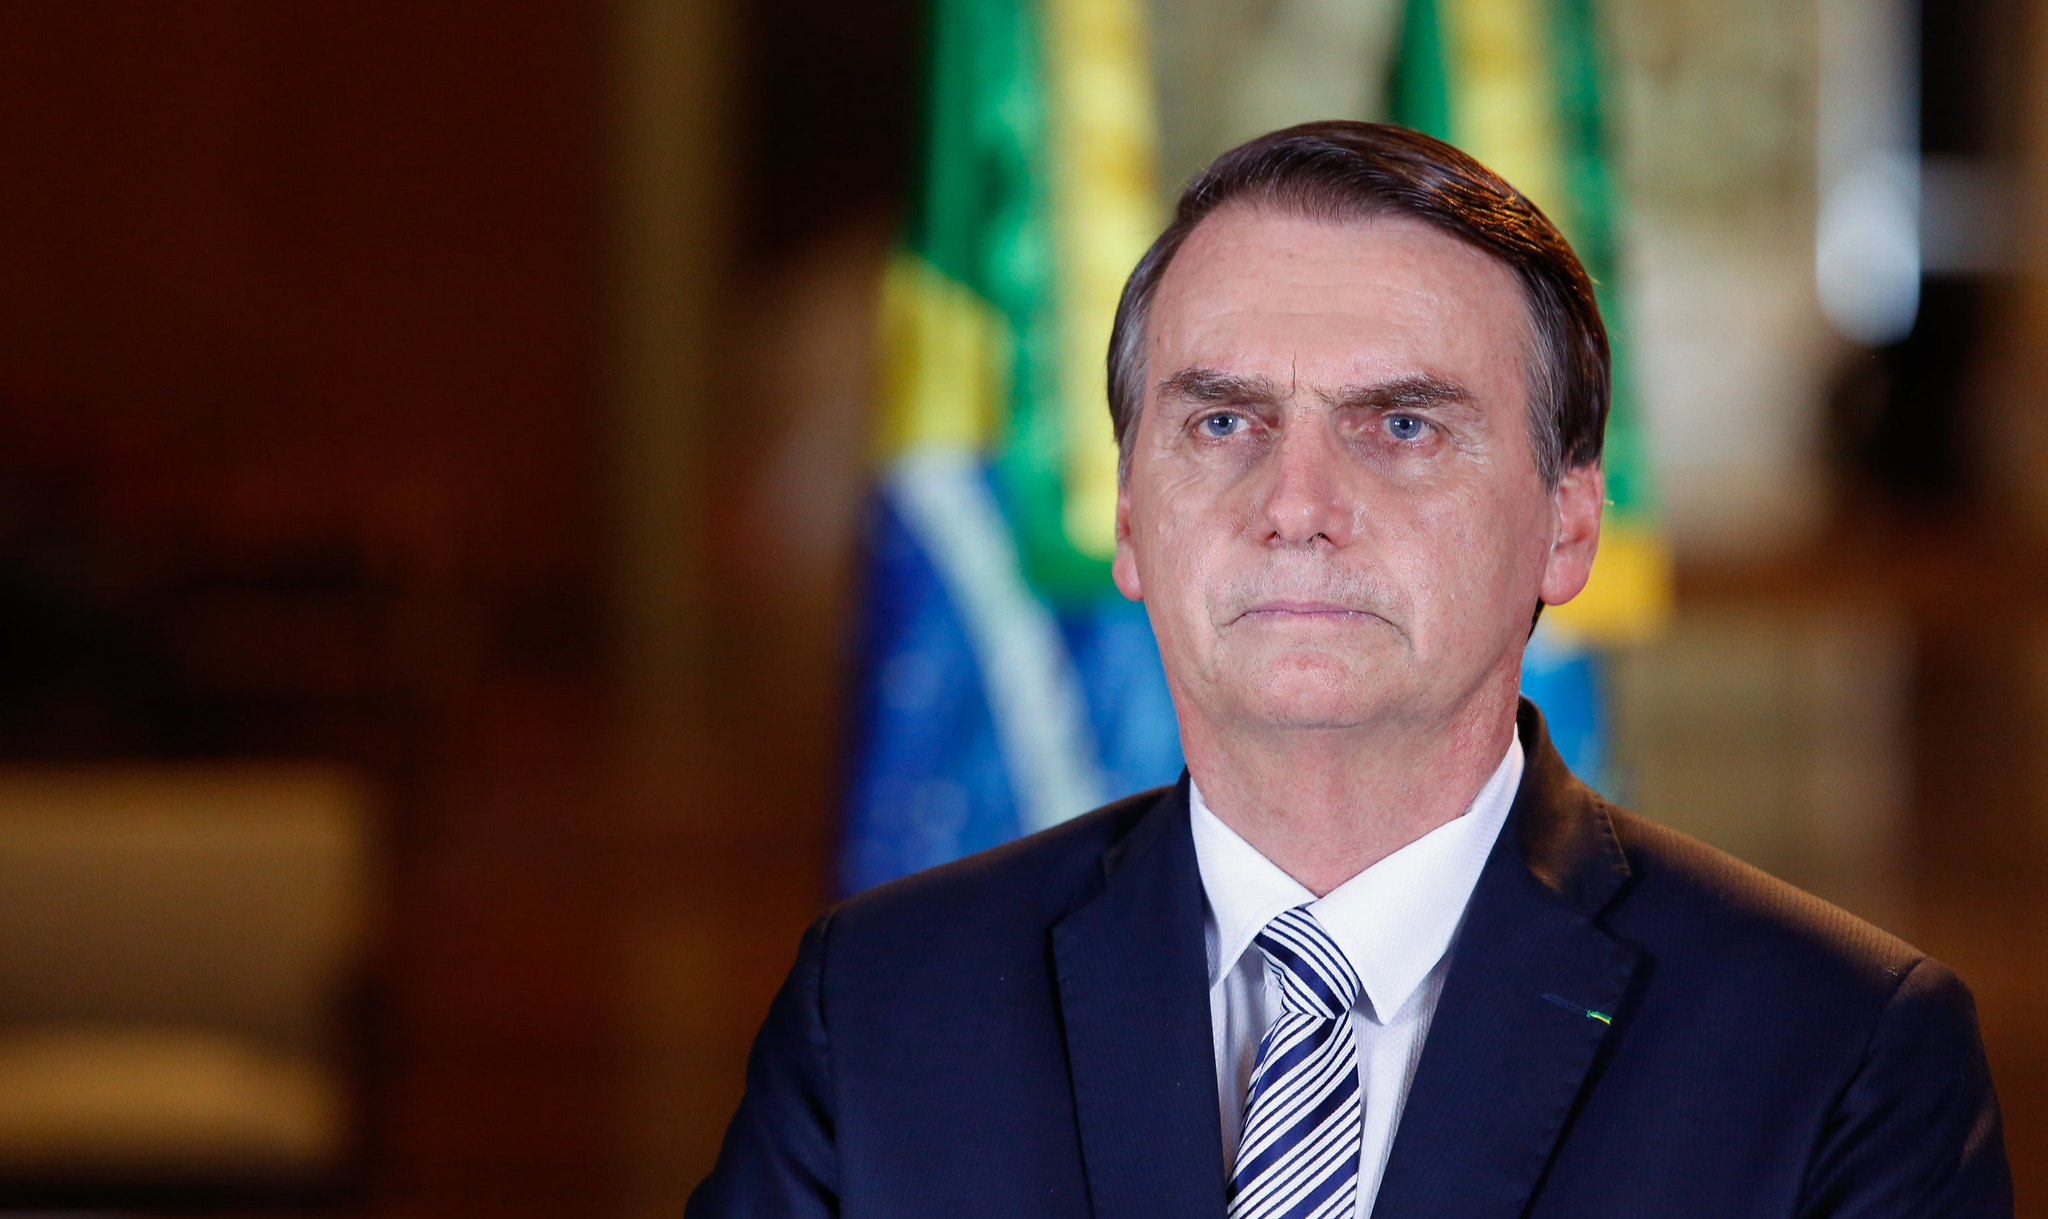 'Constituição diz que o Brasil rege-se nas suas relações internacionais pelos seguintes princípios: a defesa da paz e no repúdio ao terrorismo', disse Bolsonaro após discurso de Trump sobre Irã